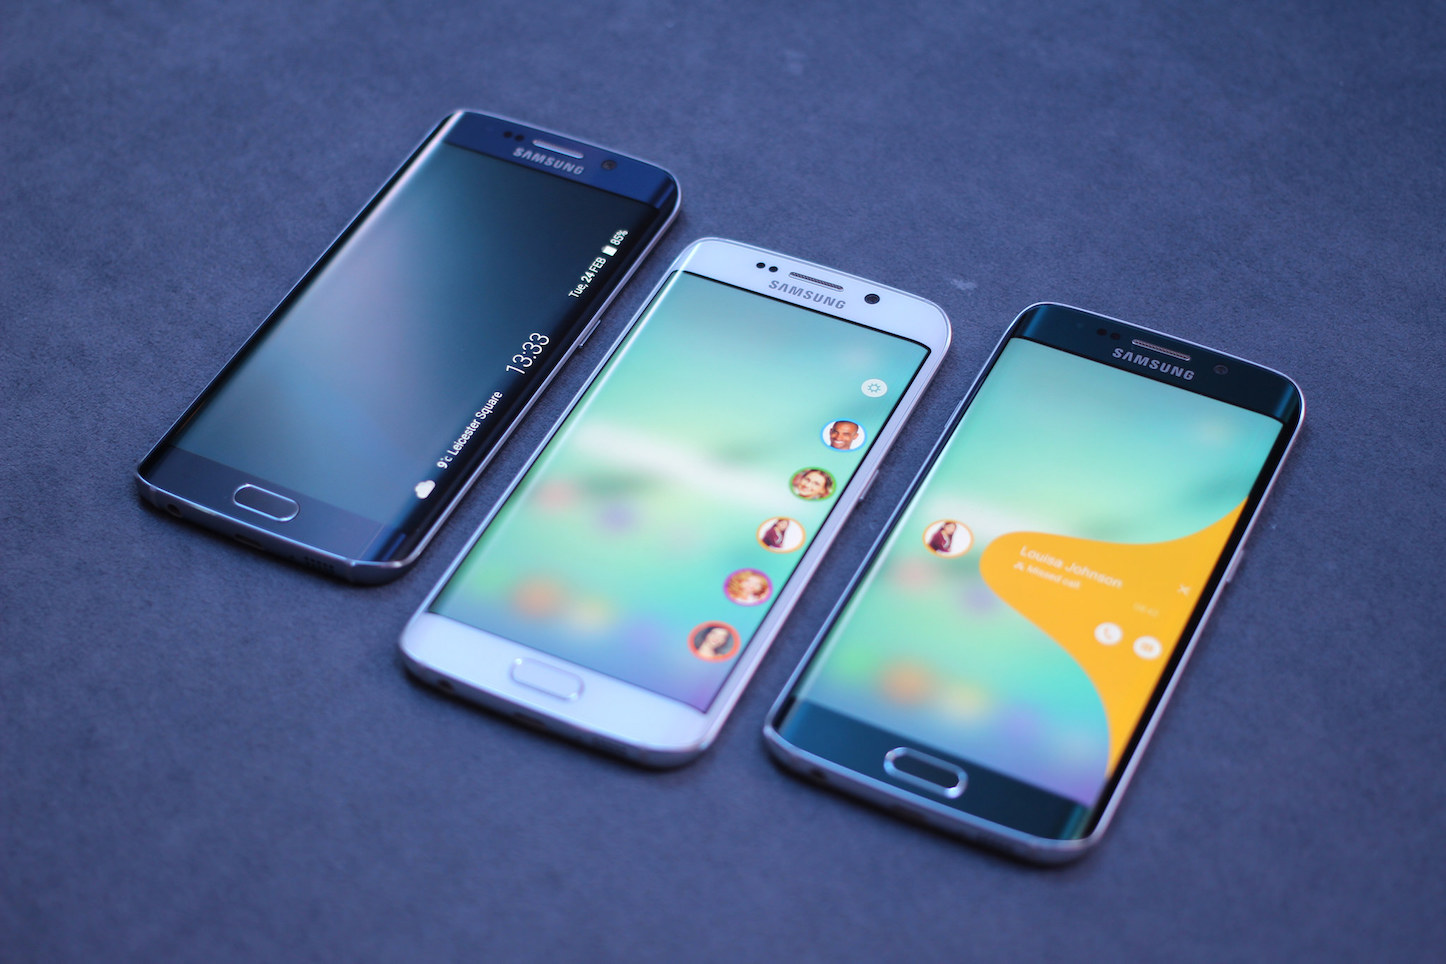 Samsung Galaxy S7 に 3d Touch に似た感圧タッチ技術を採用か ゴリミー